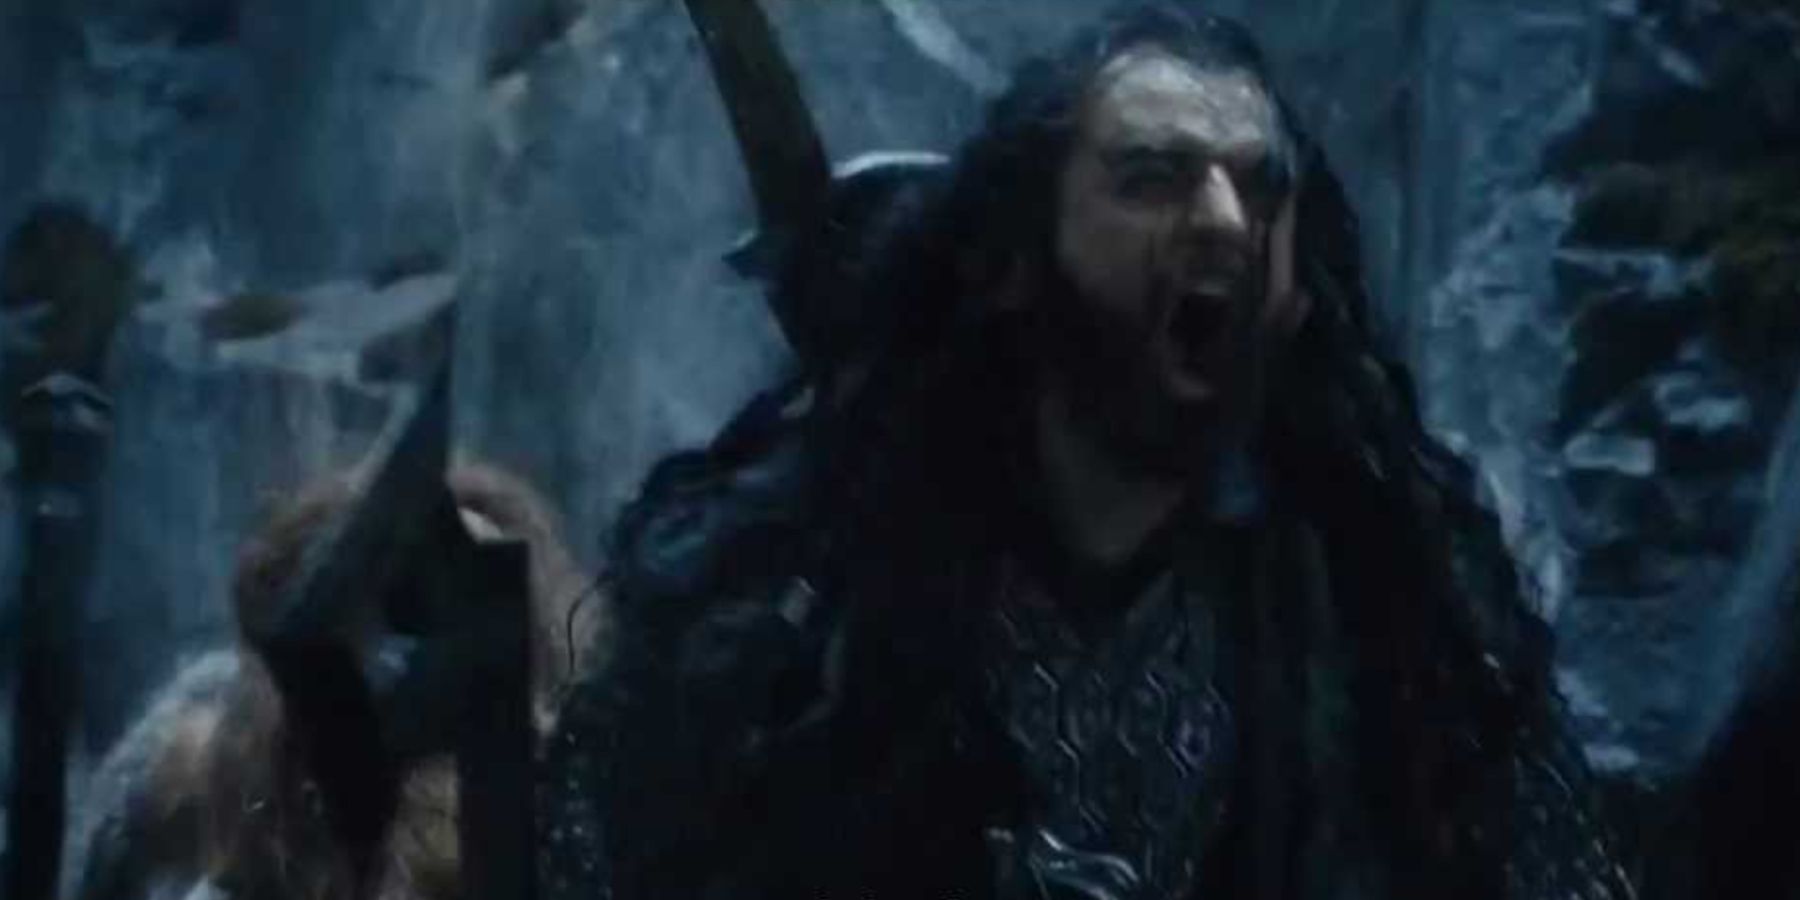 Thorin yelling